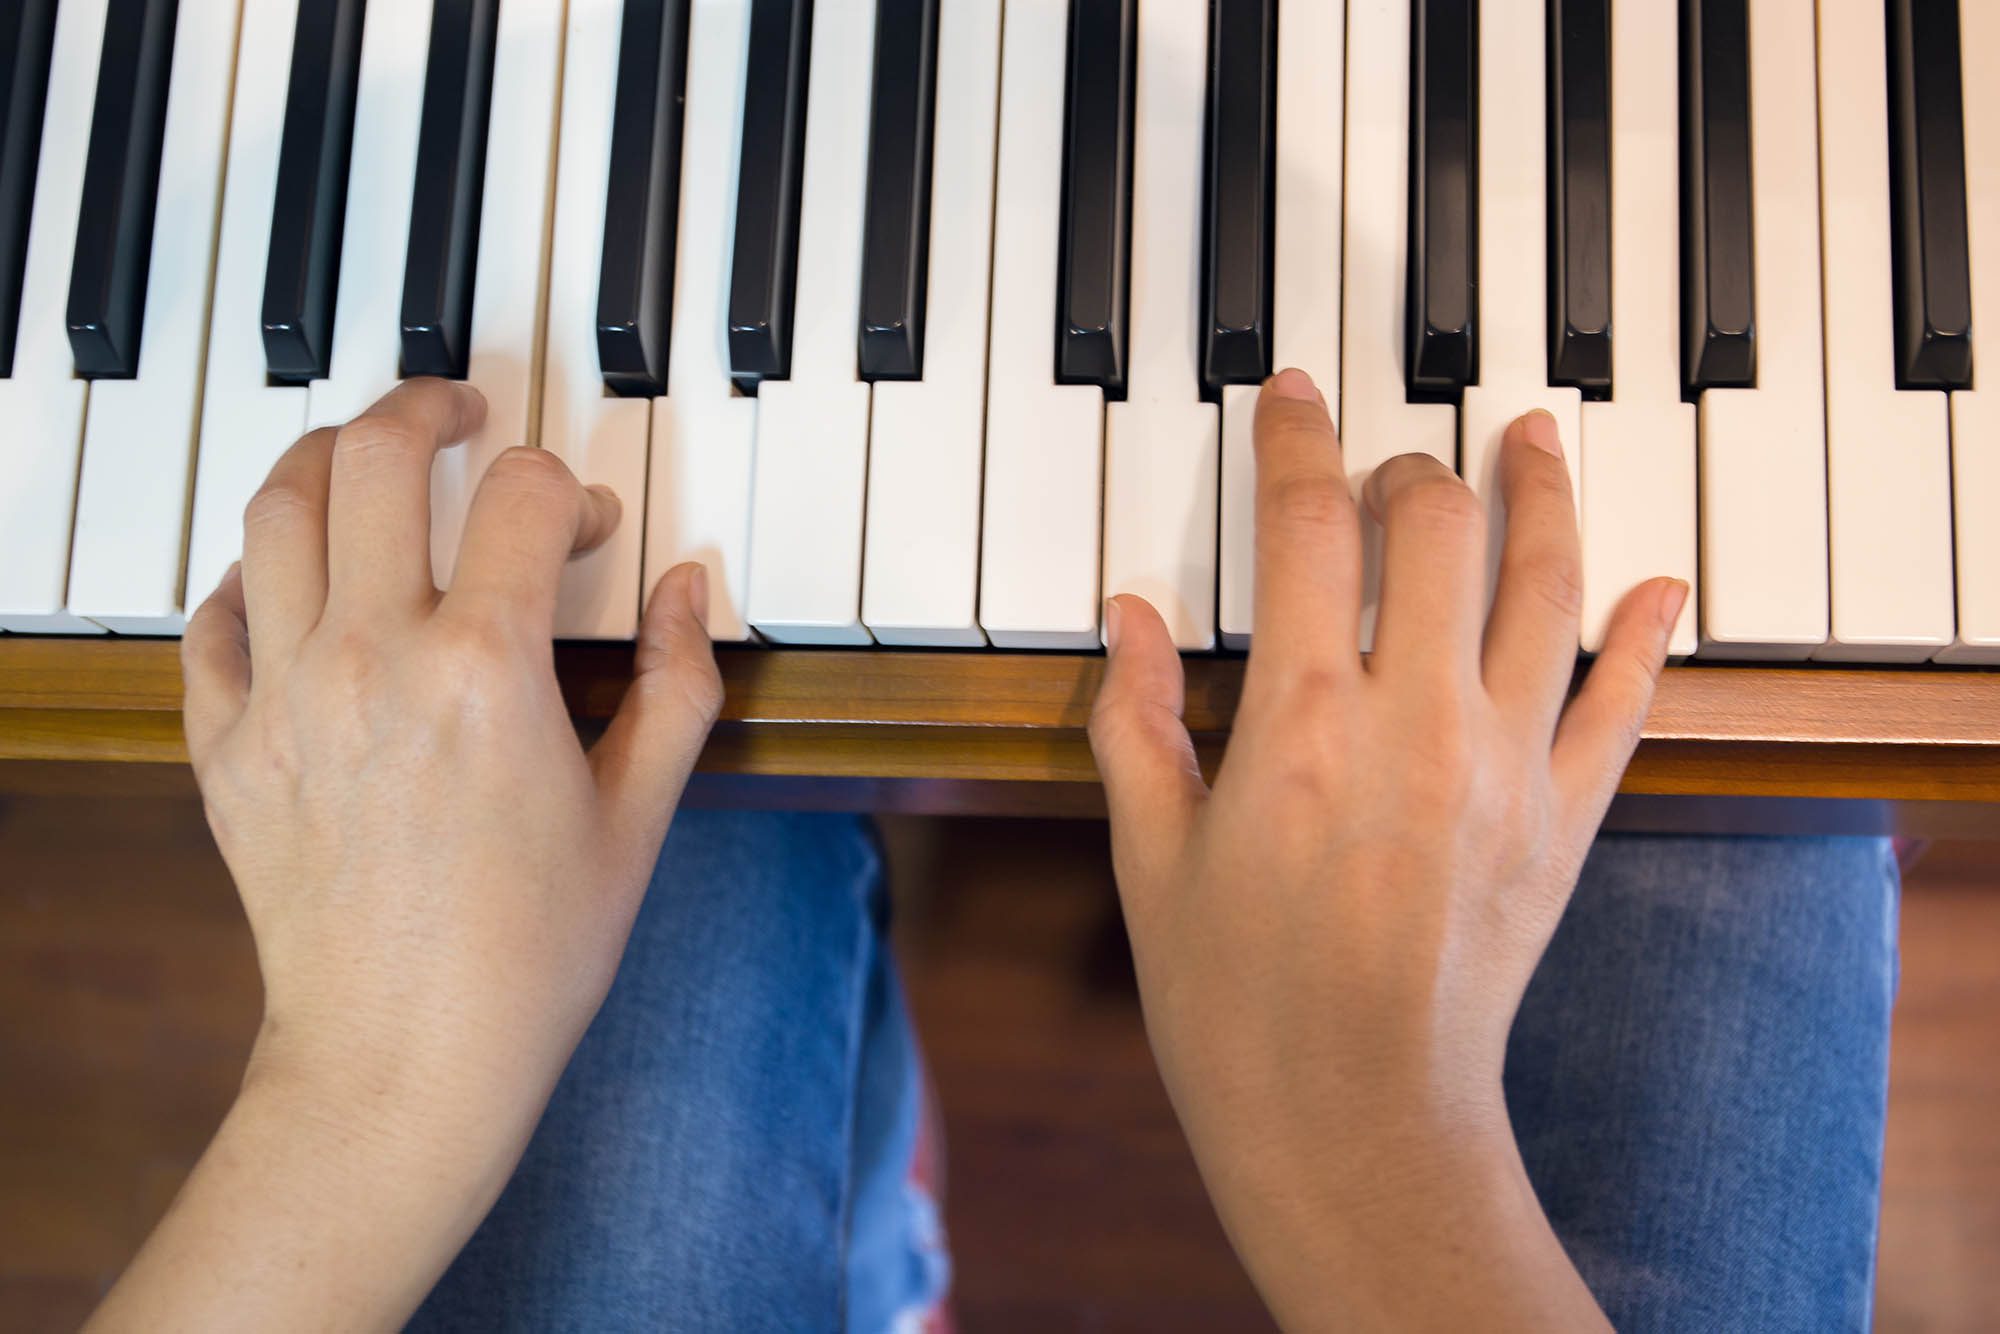 Wie lernt man Klavierspielen? Die Anatomie der Hände